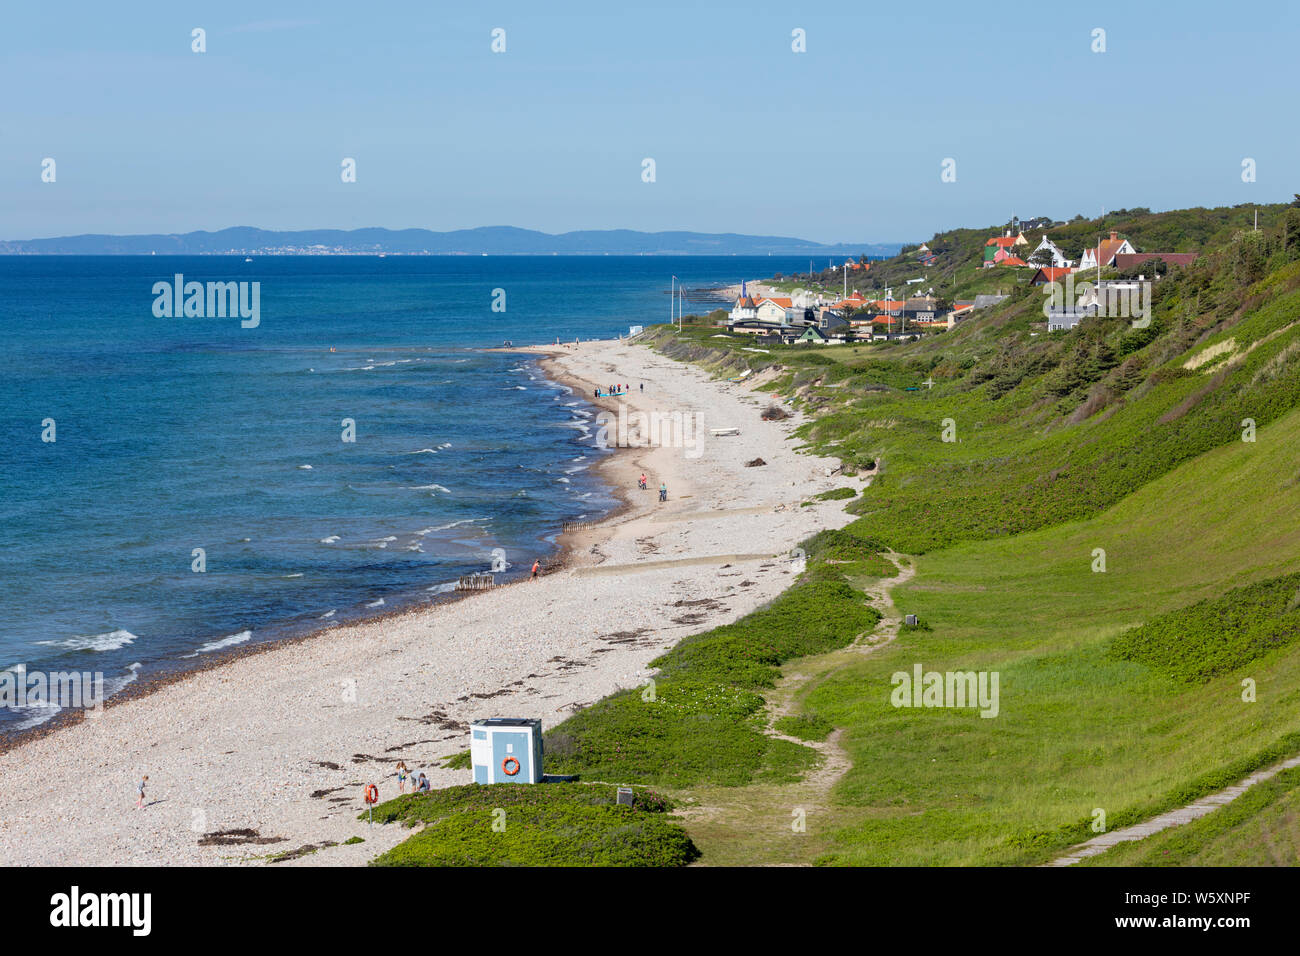 Afficher le long de la plage et du village de la partie continentale de la Suédoise en distance, Rageleje, Région Hovedstaden, la Nouvelle-Zélande, le Danemark, Europe Banque D'Images